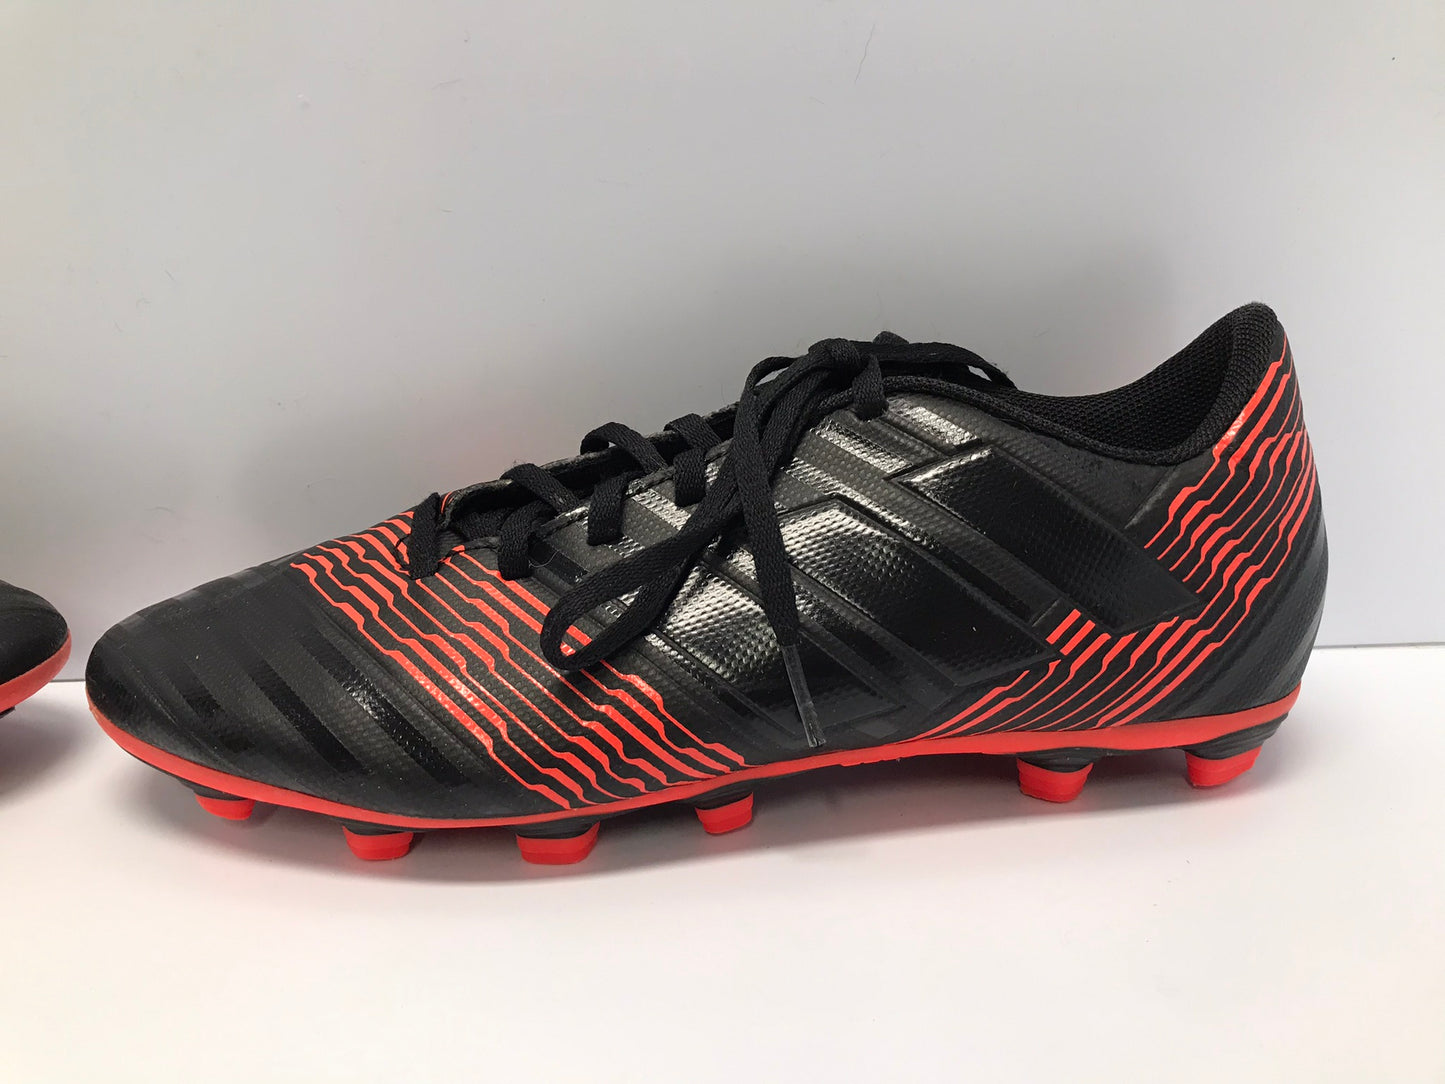 Soccer Shoes Cleats Men's Size 9 Adidas Nemeziz Black Red As New